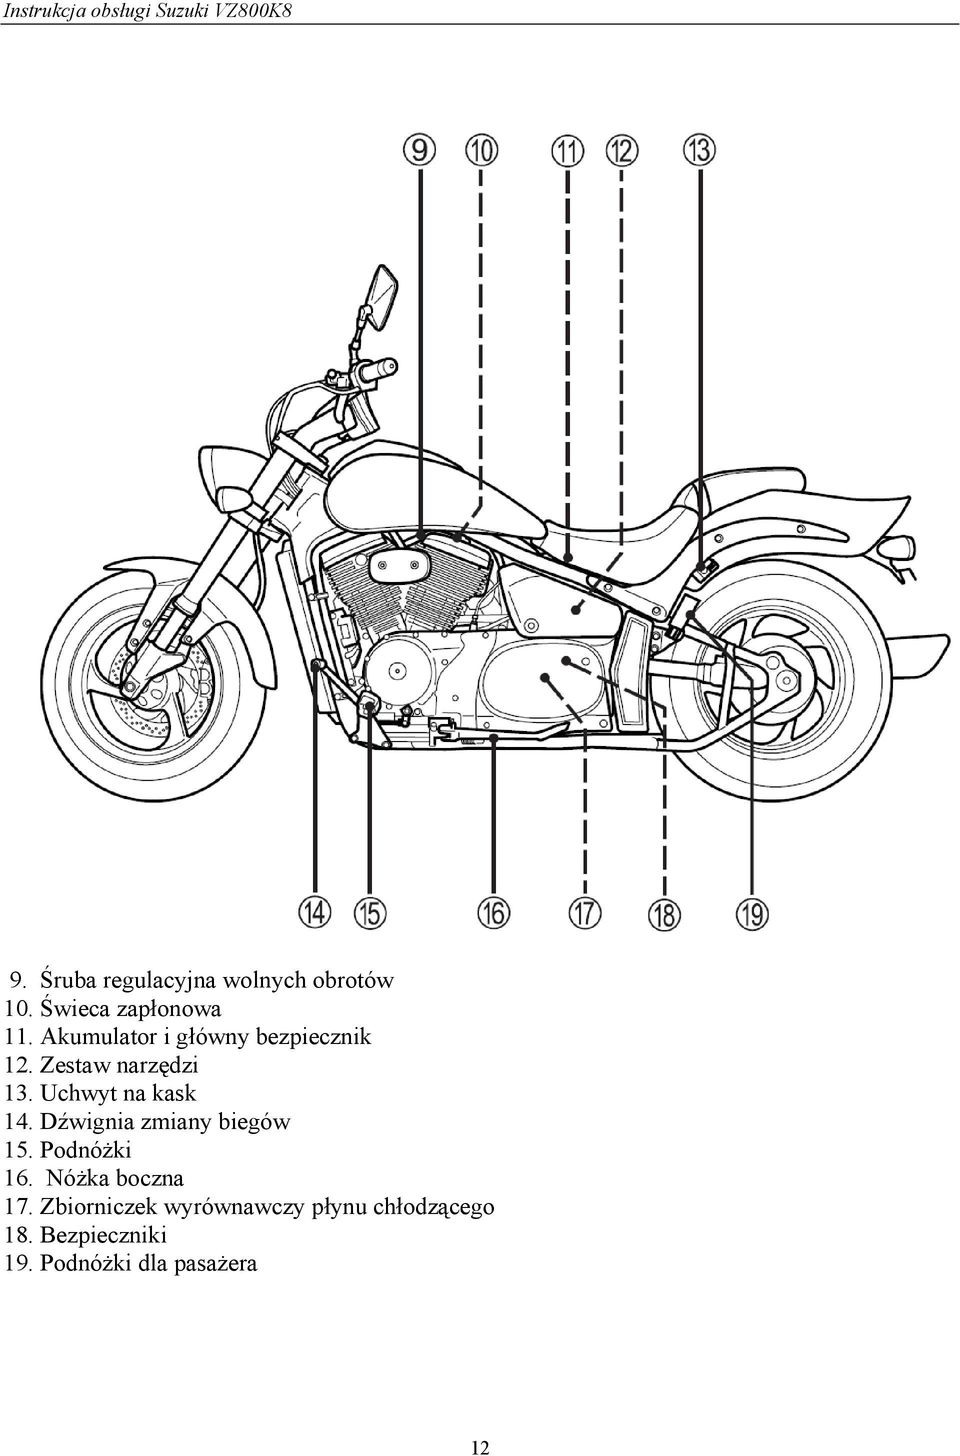 Instrukcja Obsługi Motocykla Suzuki Vz Pdf Darmowe Pobieranie